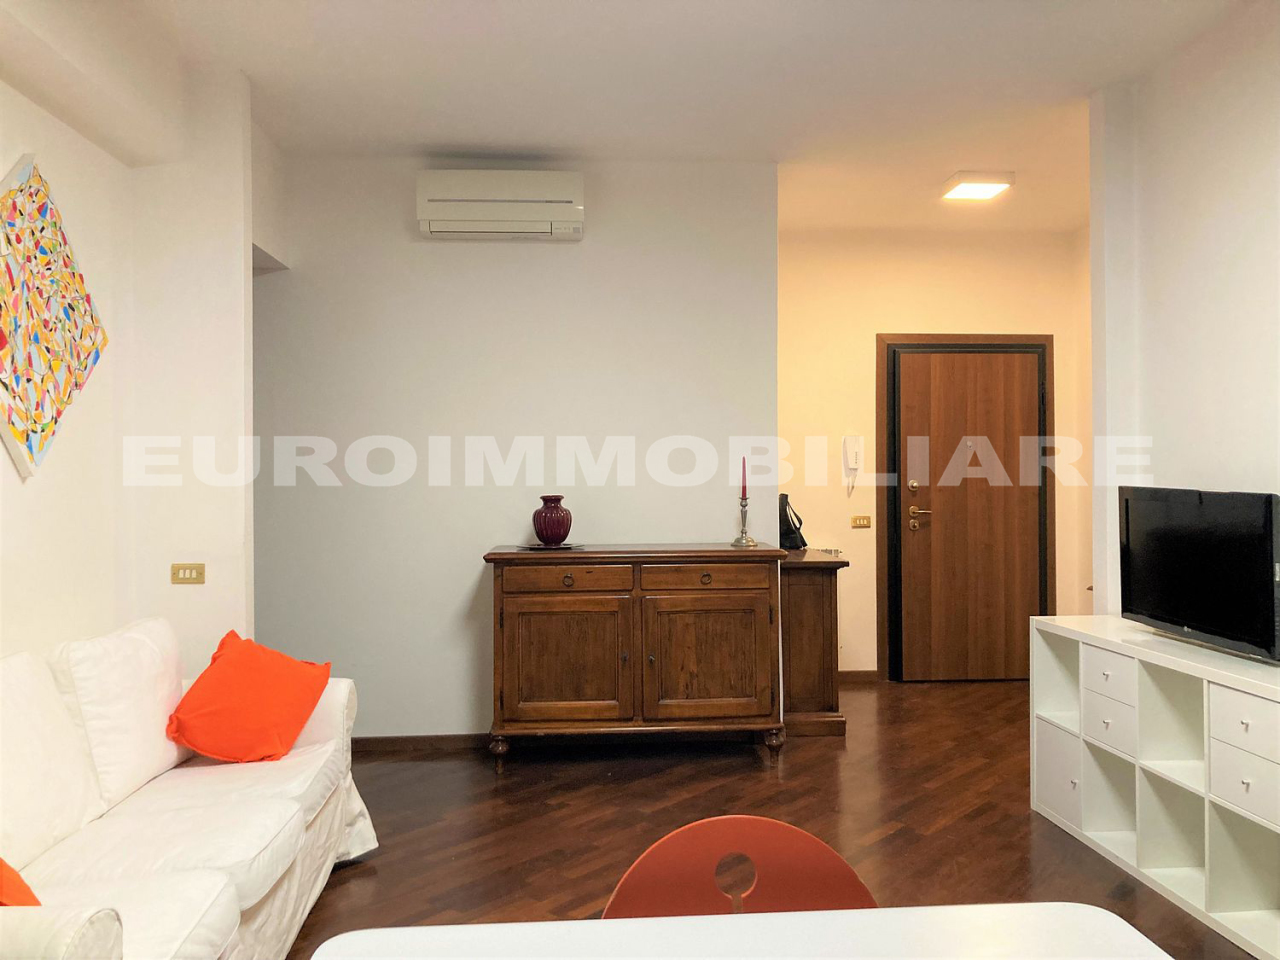 Appartamento in affitto a Brescia, 2 locali, prezzo € 700 | CambioCasa.it